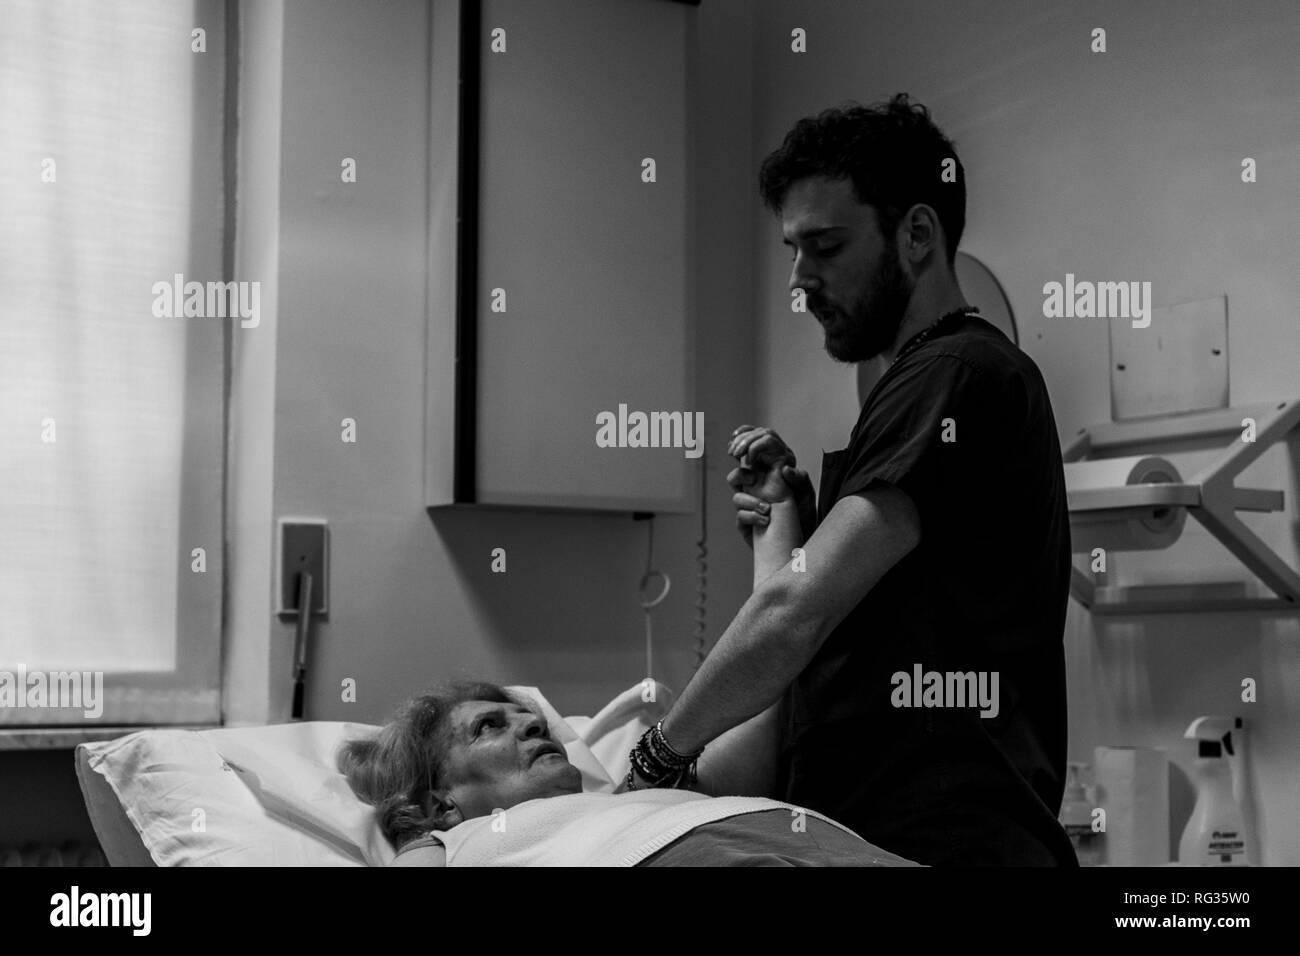 Il fisioterapista Riccardo di Lauro lavorando su una matura donna bianca che presenta una cicatrice sulla sua spalla sinistra, chi è sdraiato sul letto di un ospedale in Foto Stock